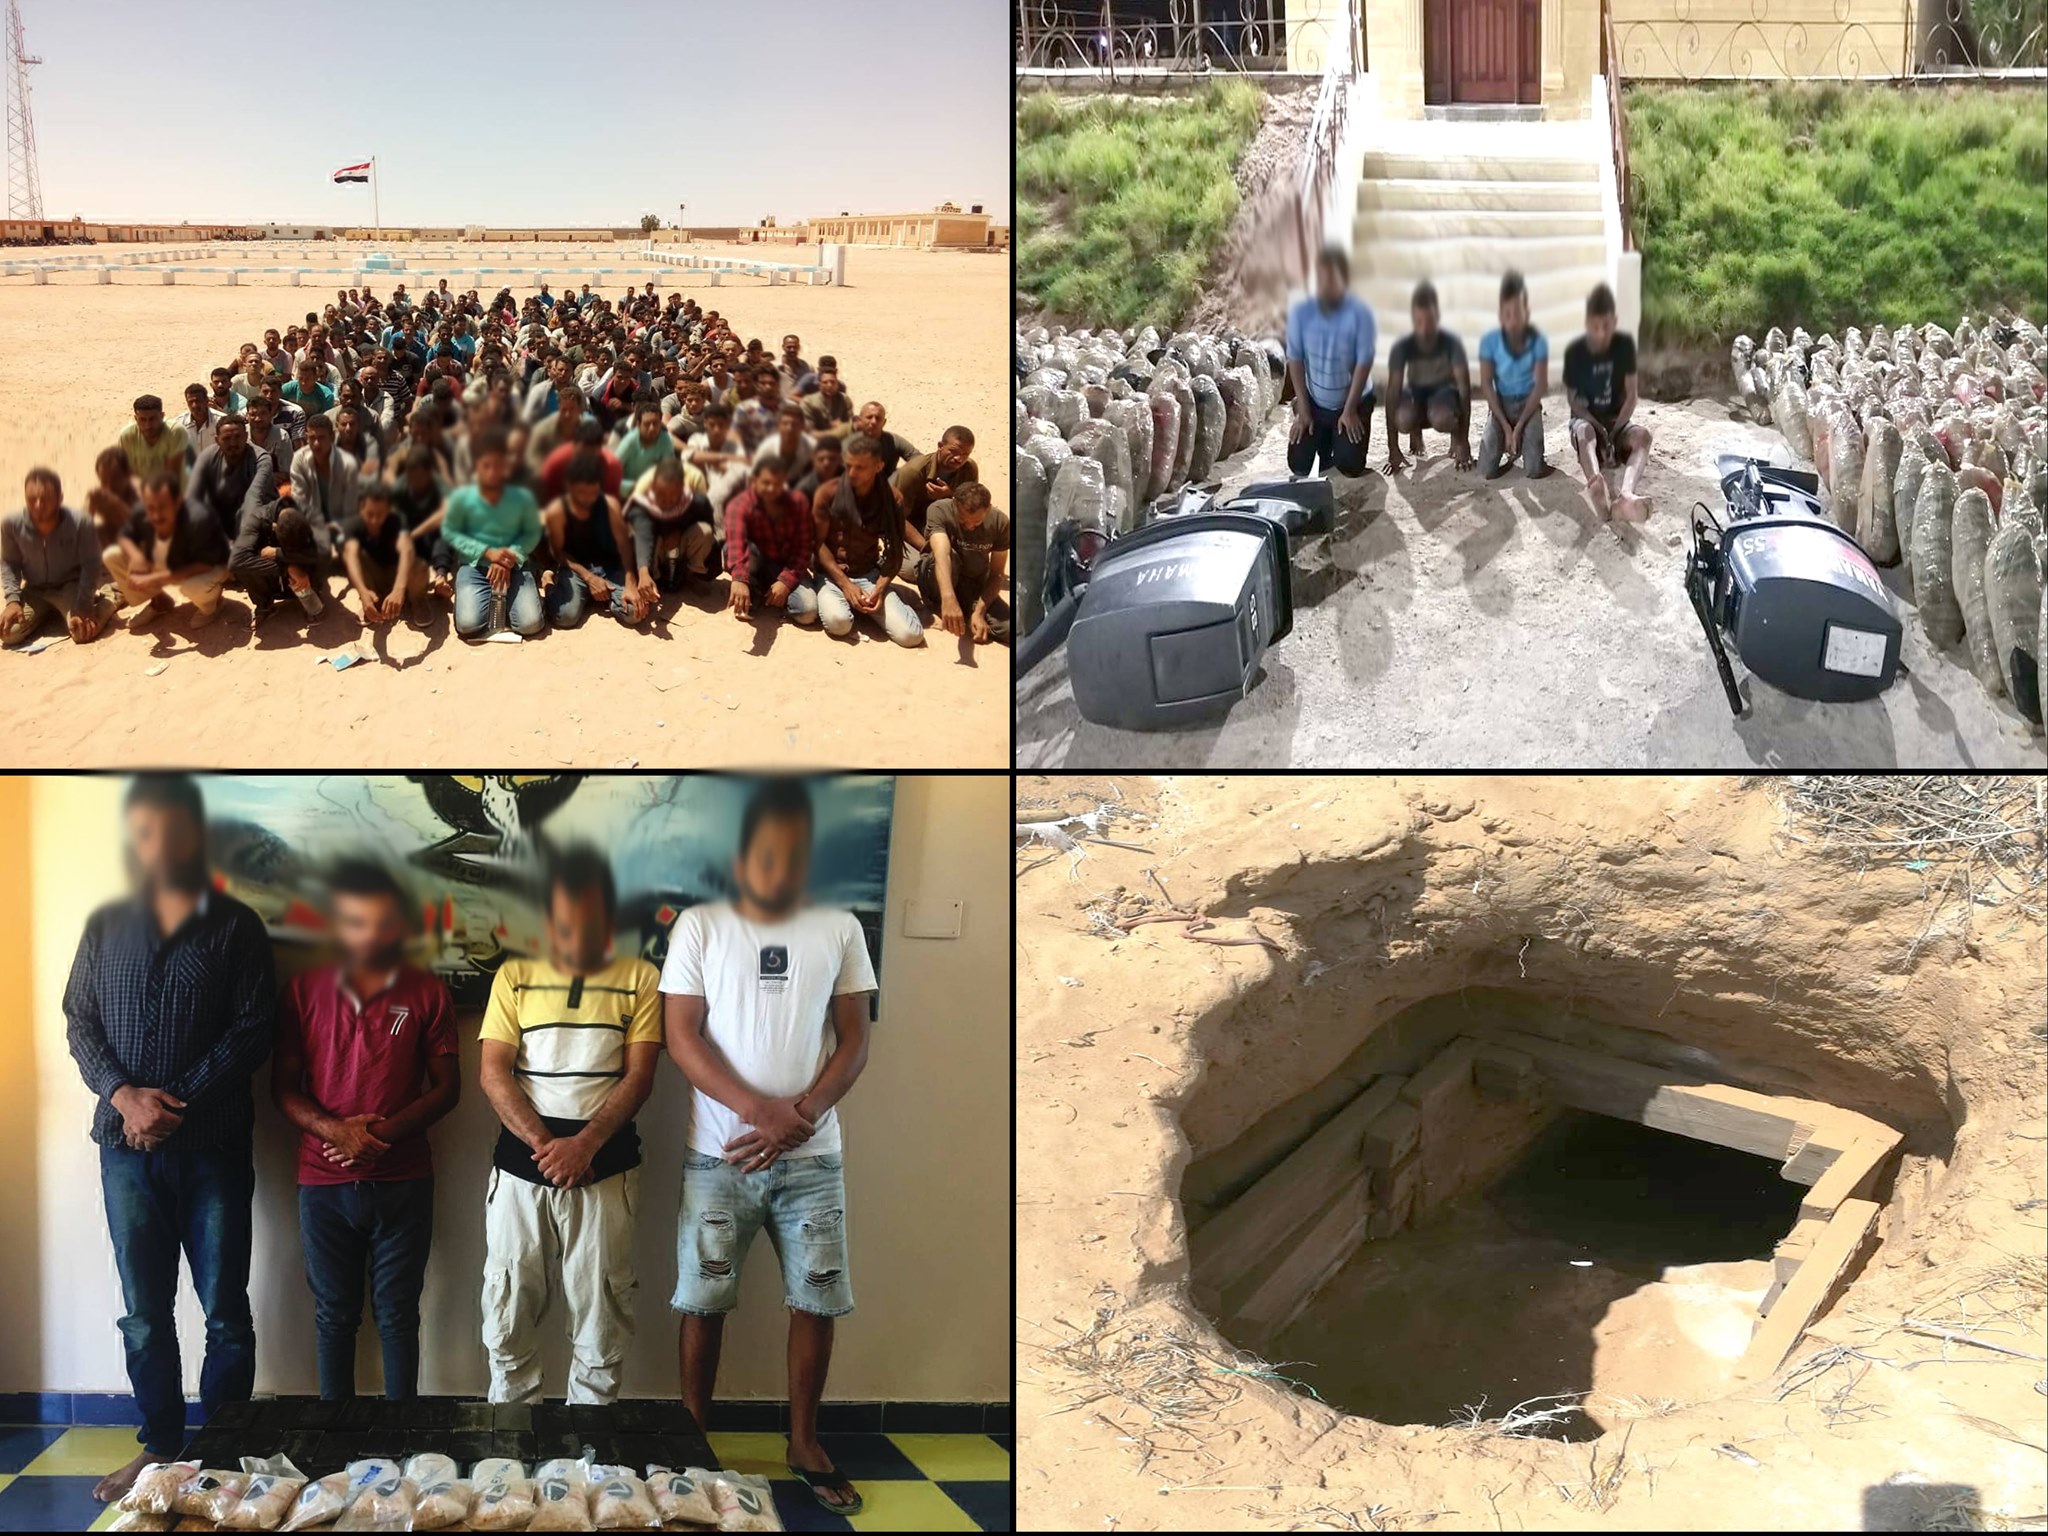   حرس الحدود تضبط 18 قنبلة معدة للتفجير و20 دانة و4341 كيلو جرام مخدر الحشيش فى نفق بشمال سيناء